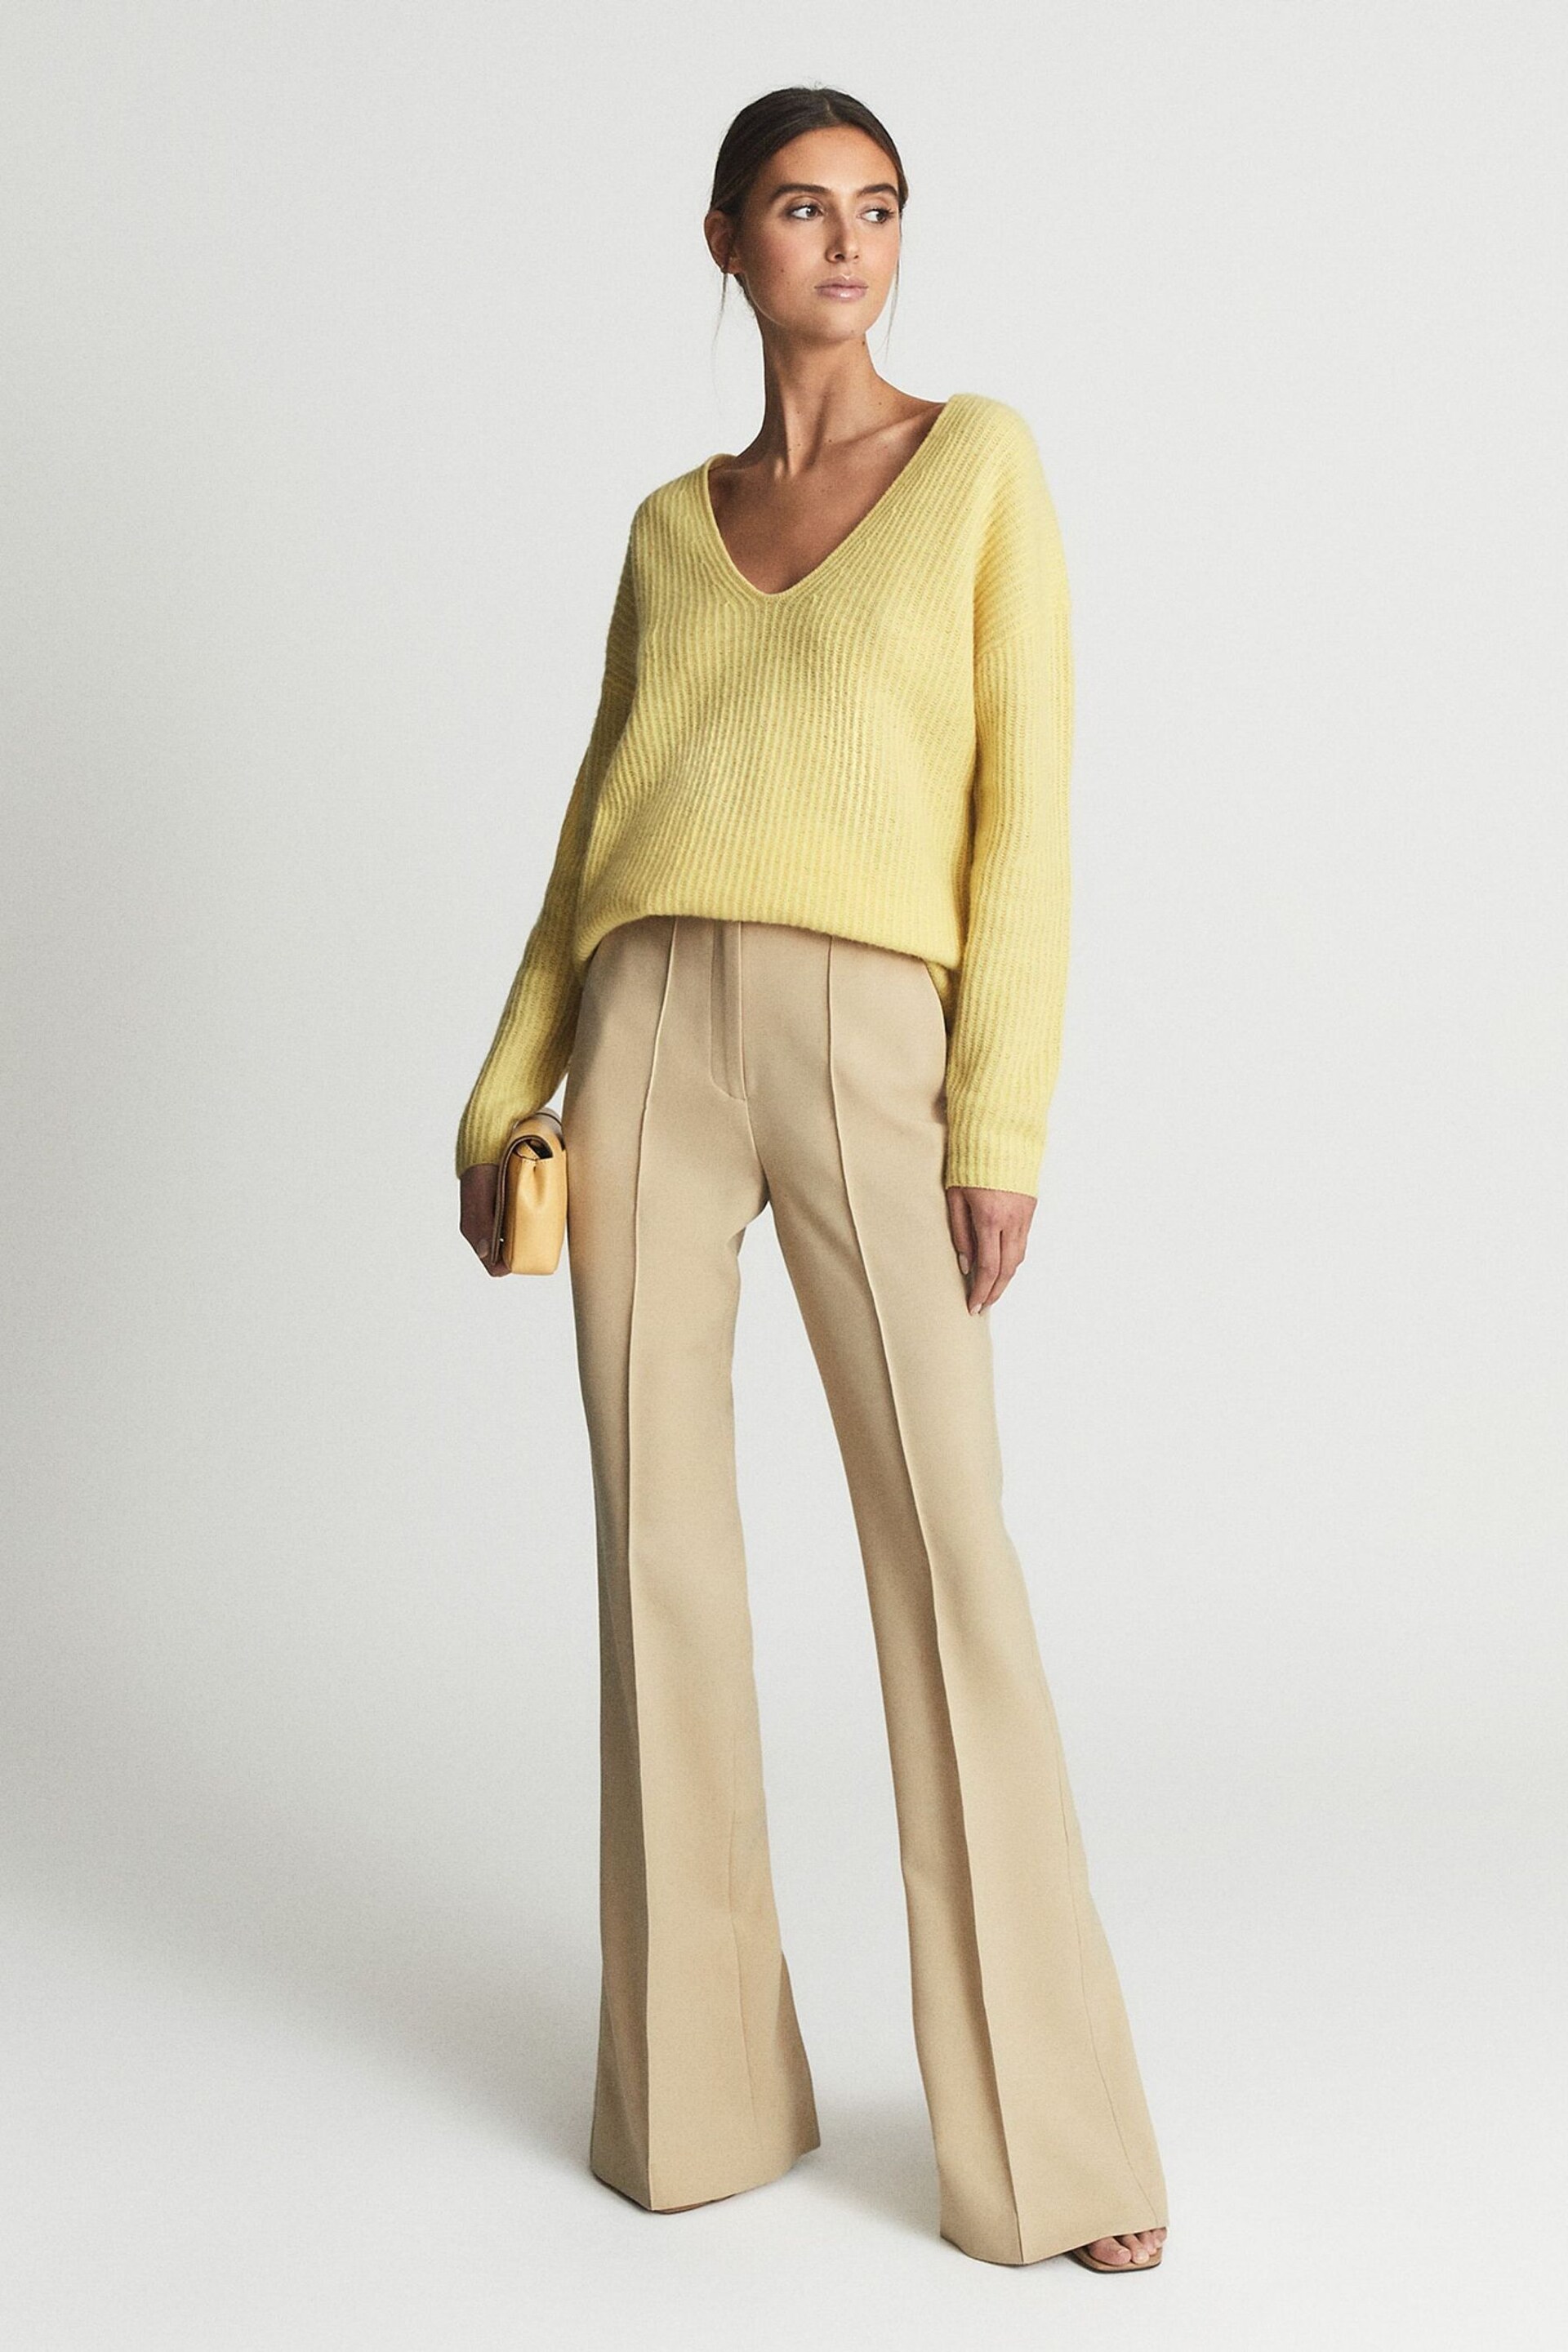 Reiss Lemon Devon Regular Wool Blend Flared Trousers - Image 1 of 5